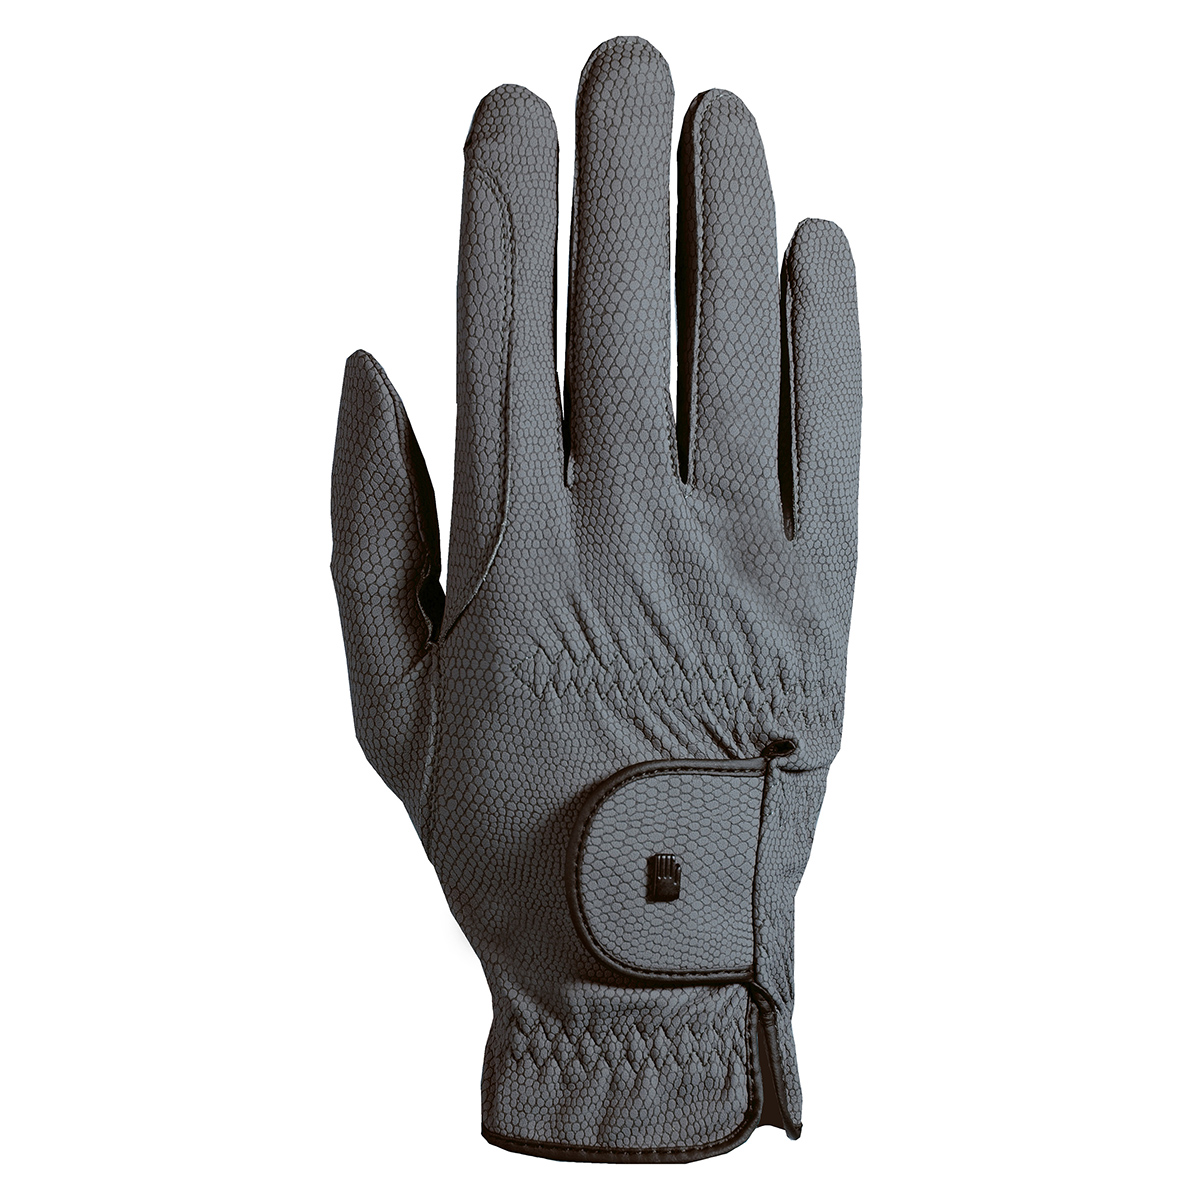 Handschoenen Roeckl Grip Winter Grijs, 6 in grijs